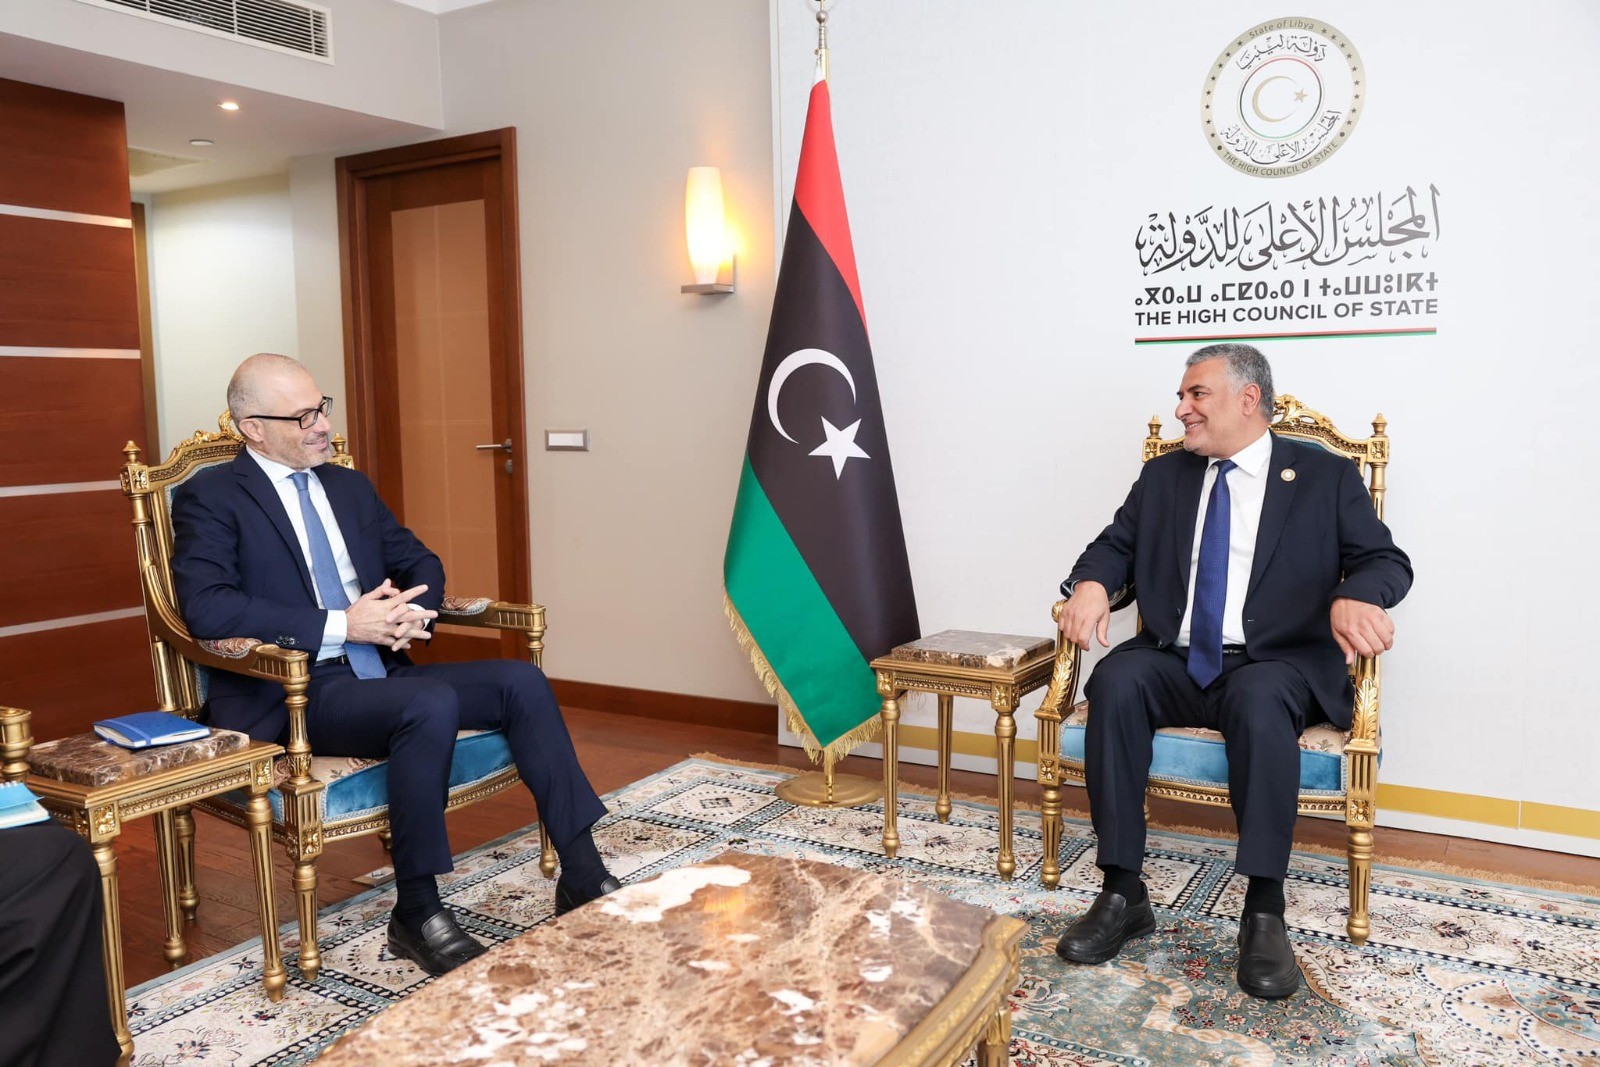 تكالة وسفير الاتحاد الأوروبي يناقشان الوضع السياسي الليبي بعد استقالة باتيلي